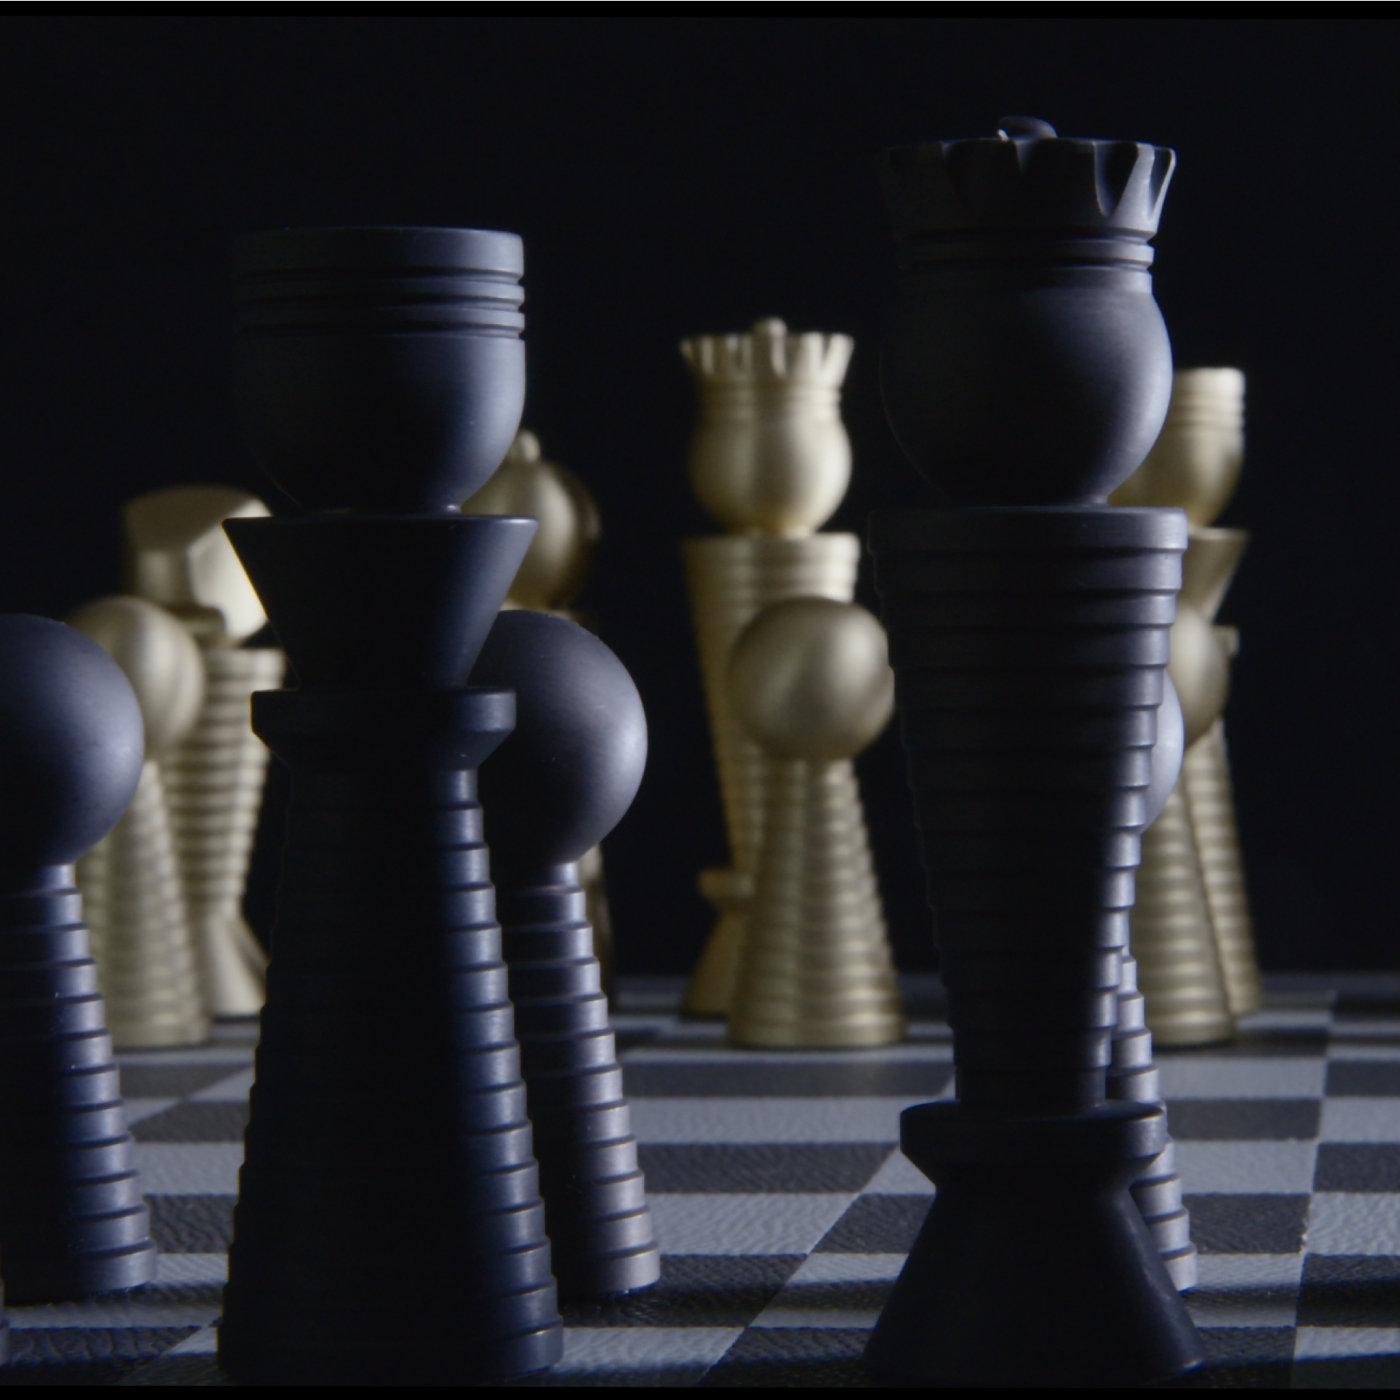 Dynamique et élégant, ce jeu d'échecs constituera un accent sublime dans une maison moderne ou traditionnelle. Fabriquée en noyer, la boîte est recouverte de cuir blanc et accentuée de carrés dorés pour la surface de l'échiquier, tandis que le